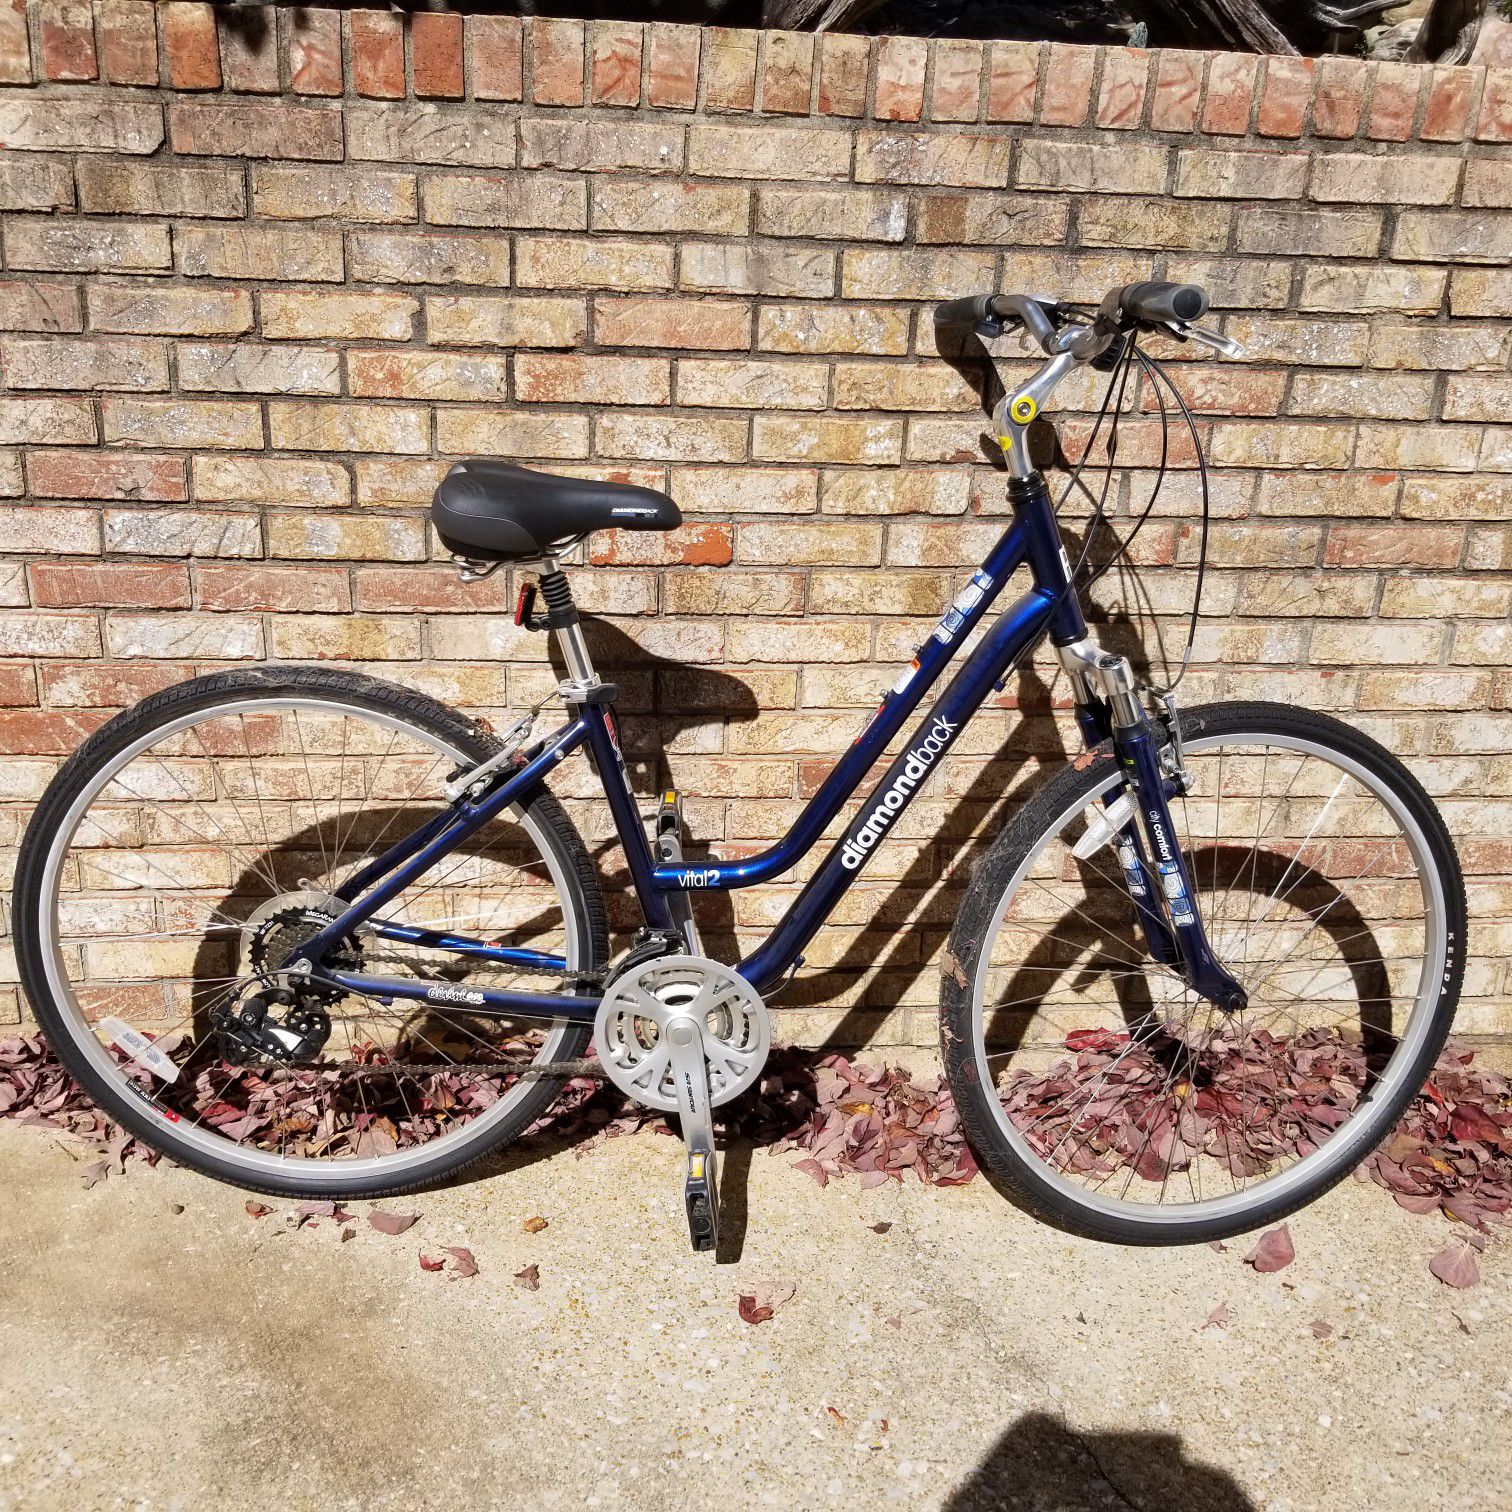 Two diamondback vital 2 bicycles for sale and 2 bike racks